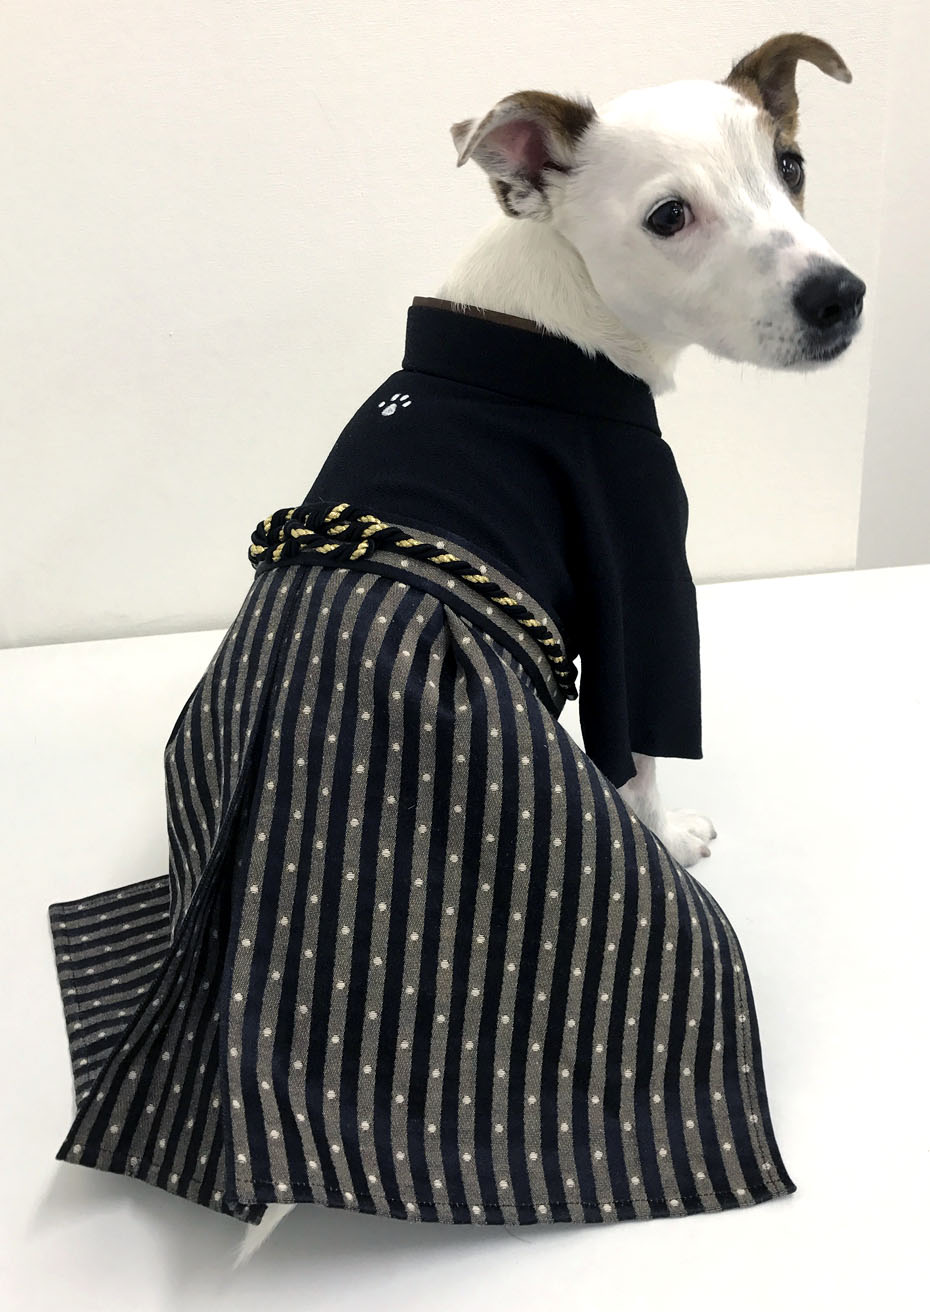 2021年激安 犬の袴✨犬用本格着物袴セット 金襴 黒×金 M わんこ着物 